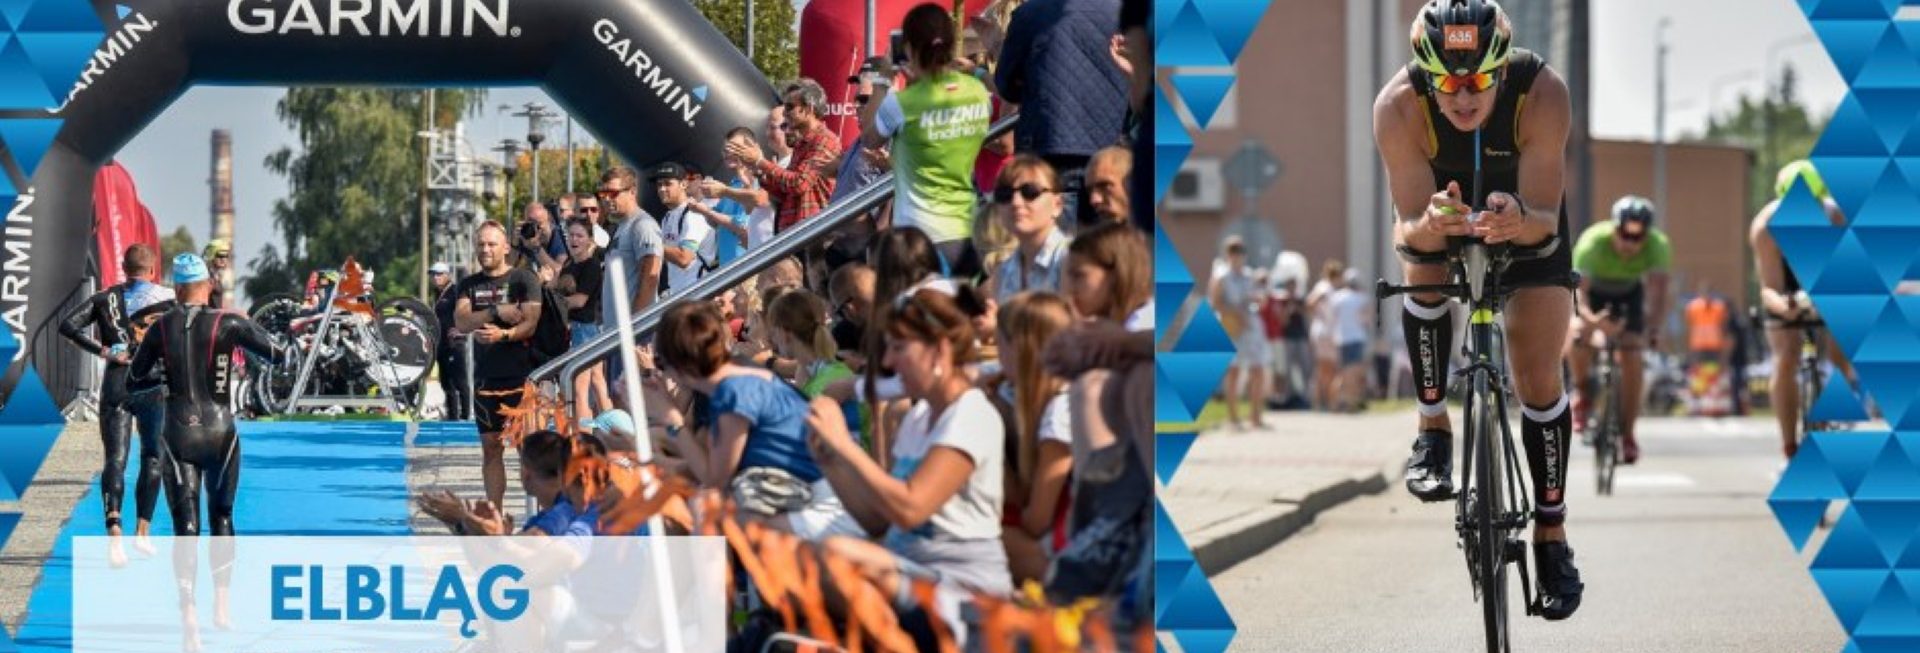 Plakat zapraszający do Elbląga na cykliczną imprezę Garmin Iron Triathlon Elbląg - 2021. Na plakacie dwa zdjęcia. Zdjęcie po prawej stronie to zawodnik jadący na rowerze podczas zawodów. Zdjęcie po lewej stronie przedstawia trybuny a na nich kibiców oraz zawodników biegnących w stronę zaparkowanych rowerów.    